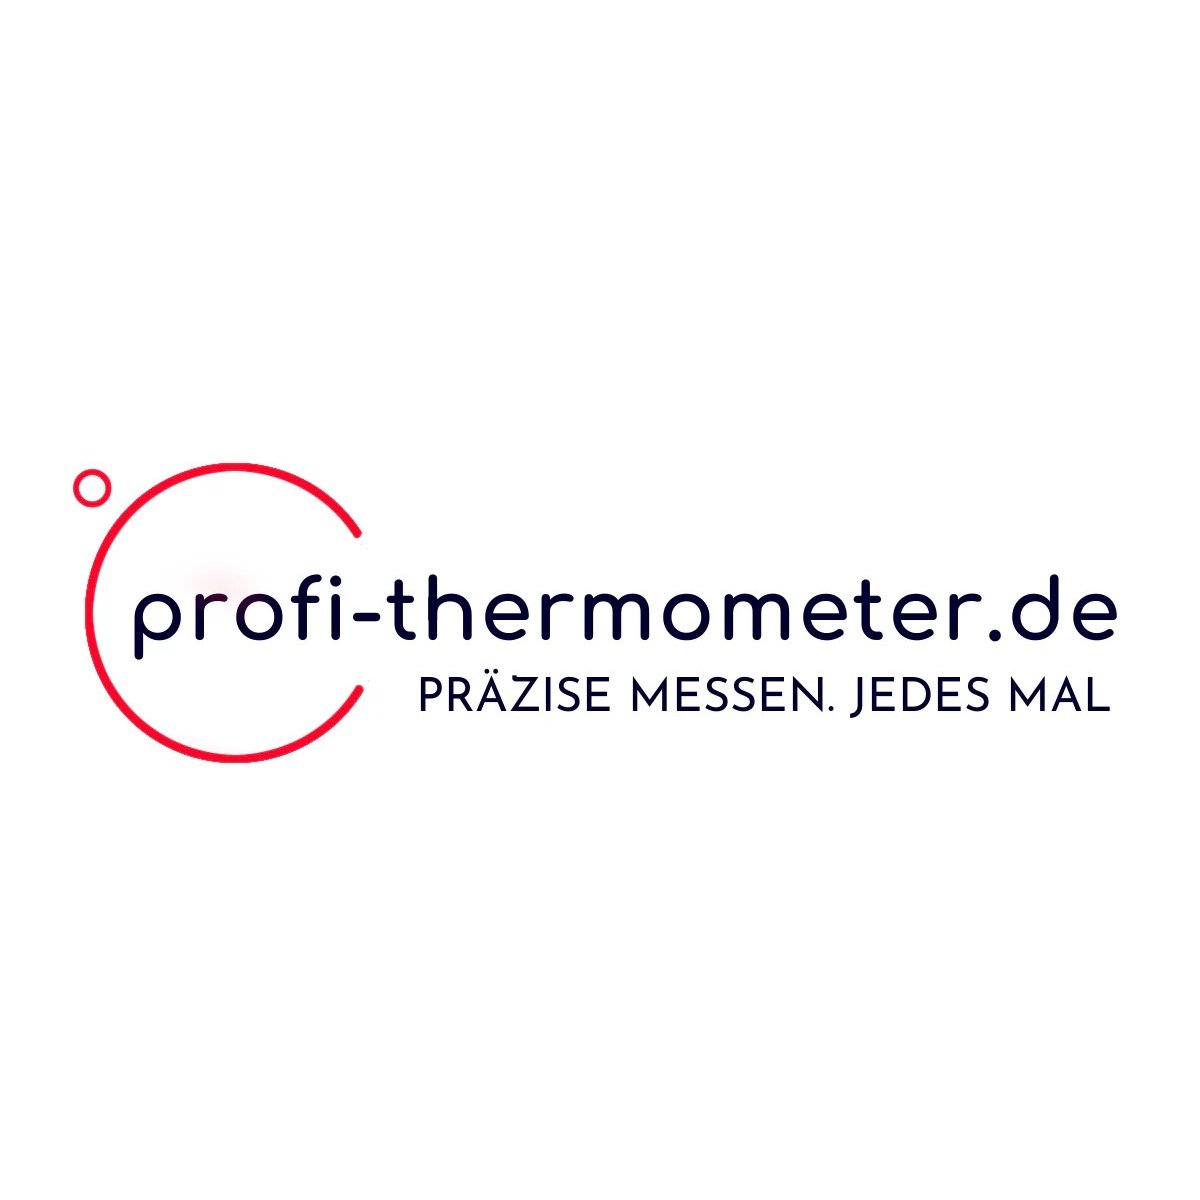 Profi-Thermometer GbR in Berlin